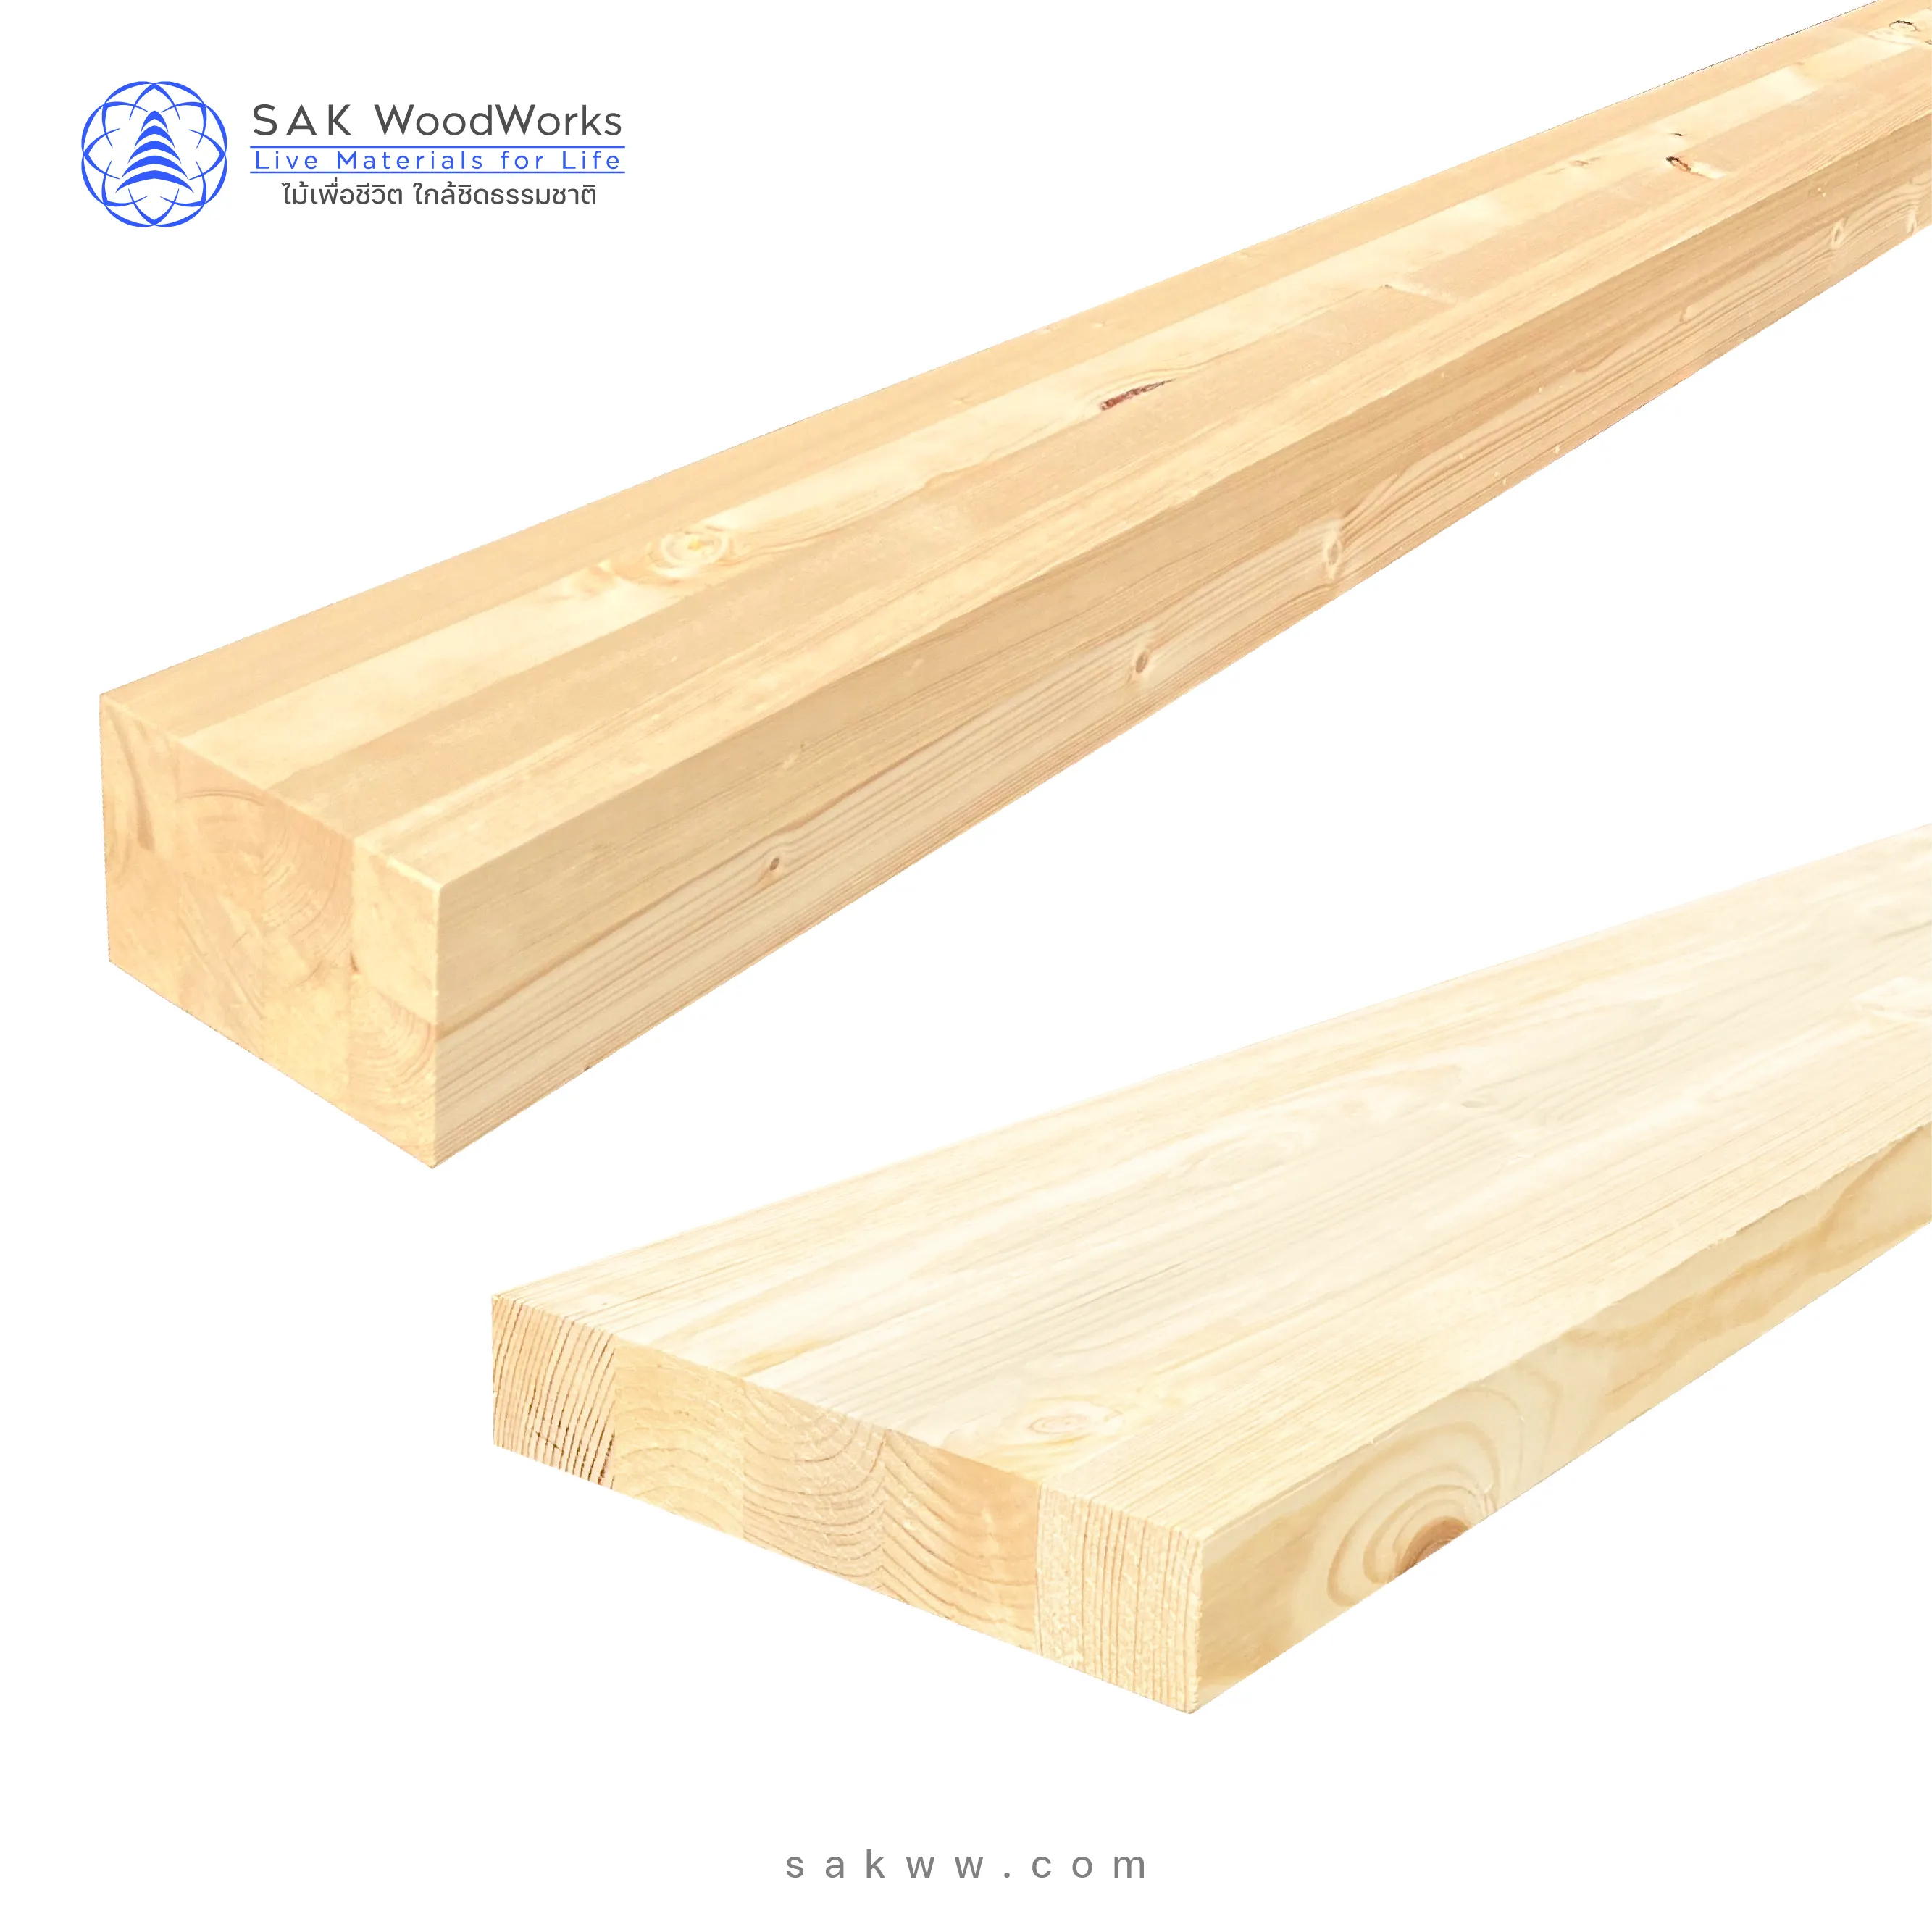 SAK WoodWorks Северная русская сосновая ель склеенная пальчиковая древесина и доска, дерево для строительства и декора